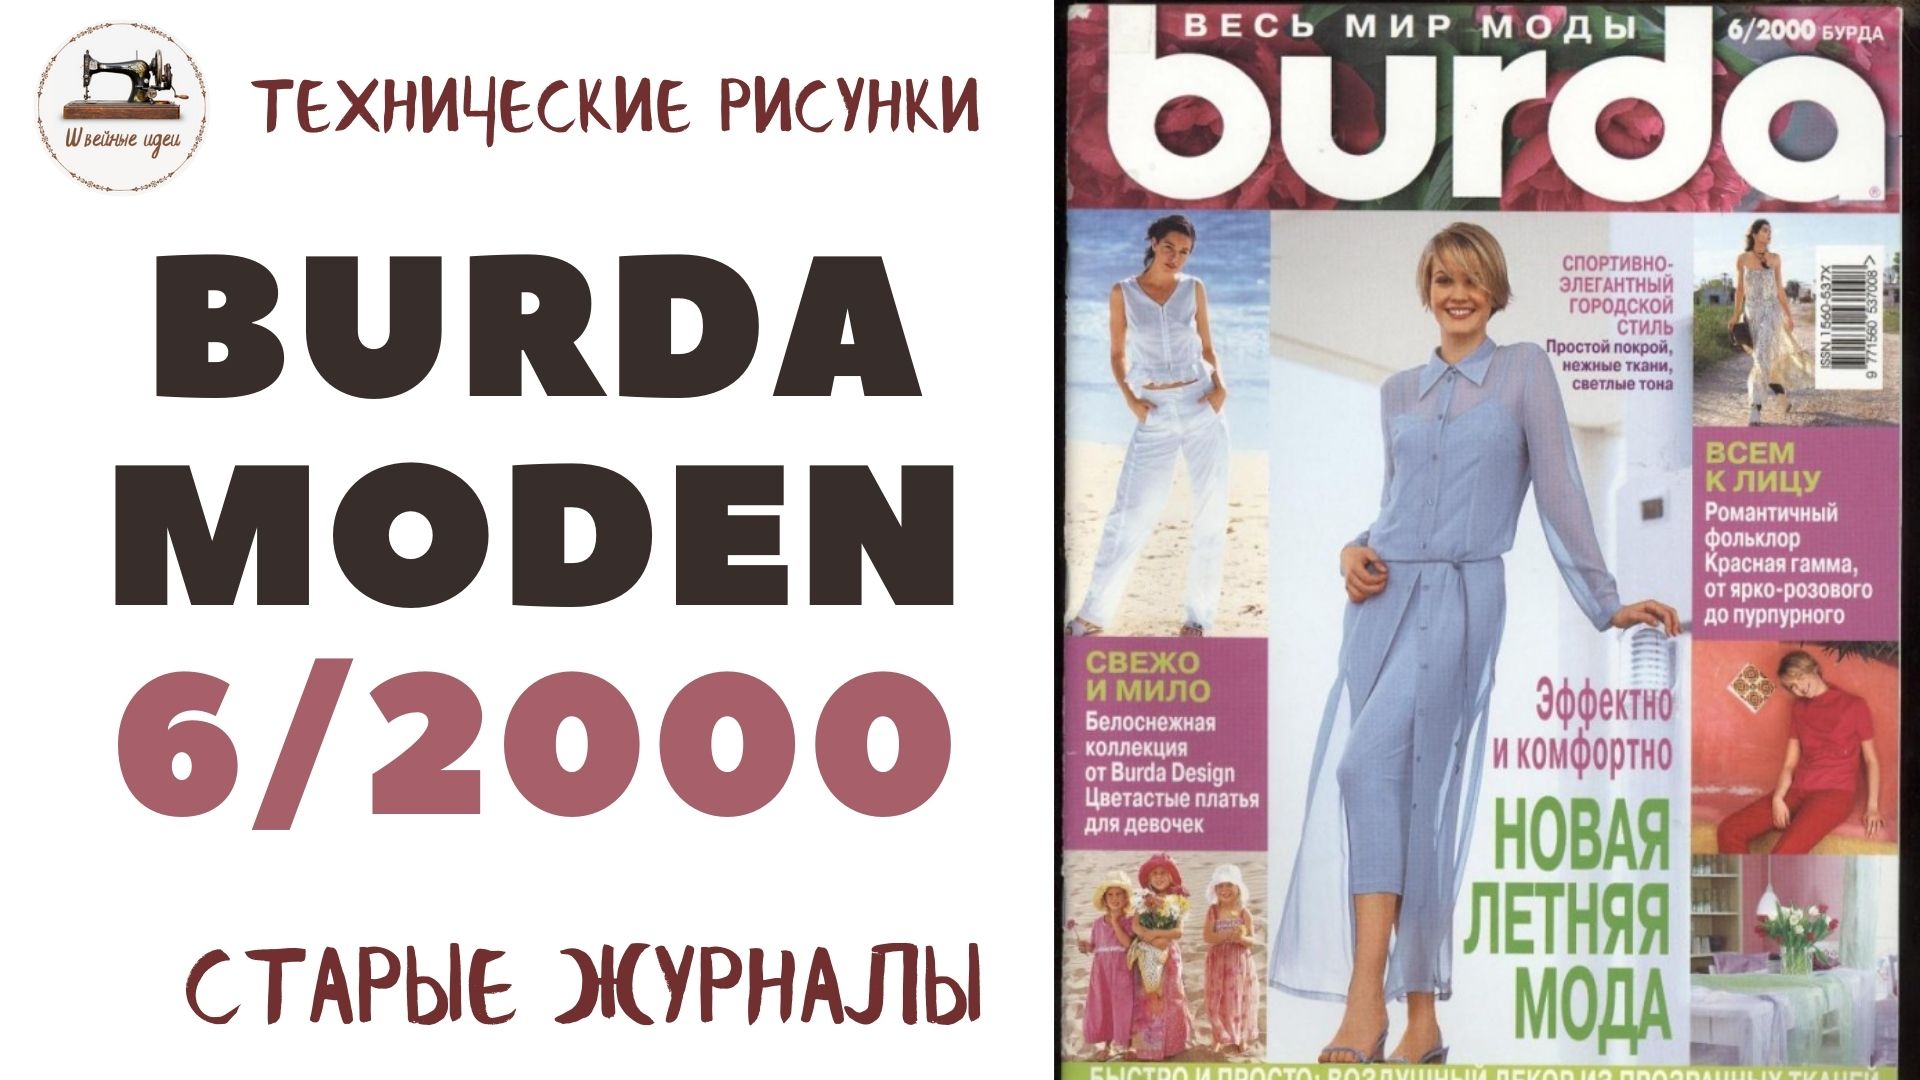 Burda Moden 6/2000 ТЕХНИЧЕСКИЕ РИСУНКИ/ Новый виток в моде - всё популярное из 2000-х